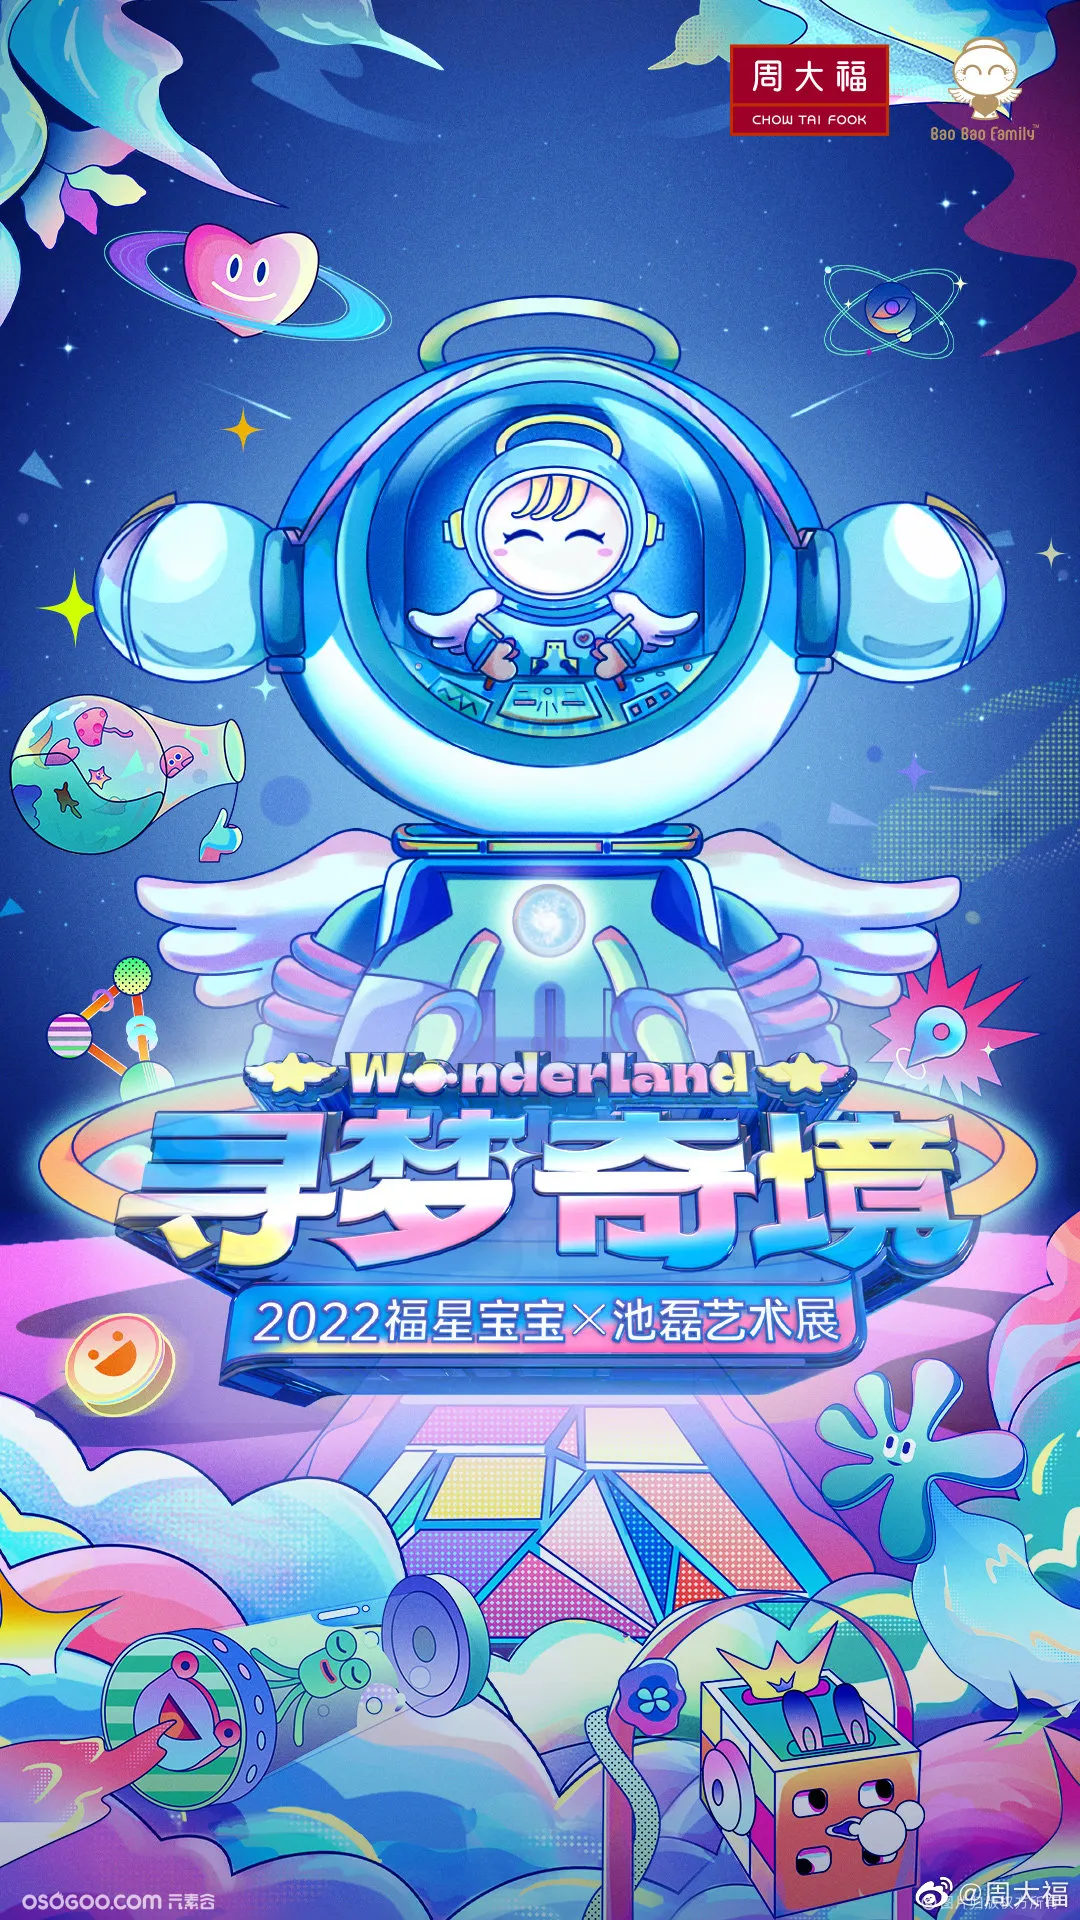 2022福星宝宝x池磊艺术展【寻梦奇境Wonderland】